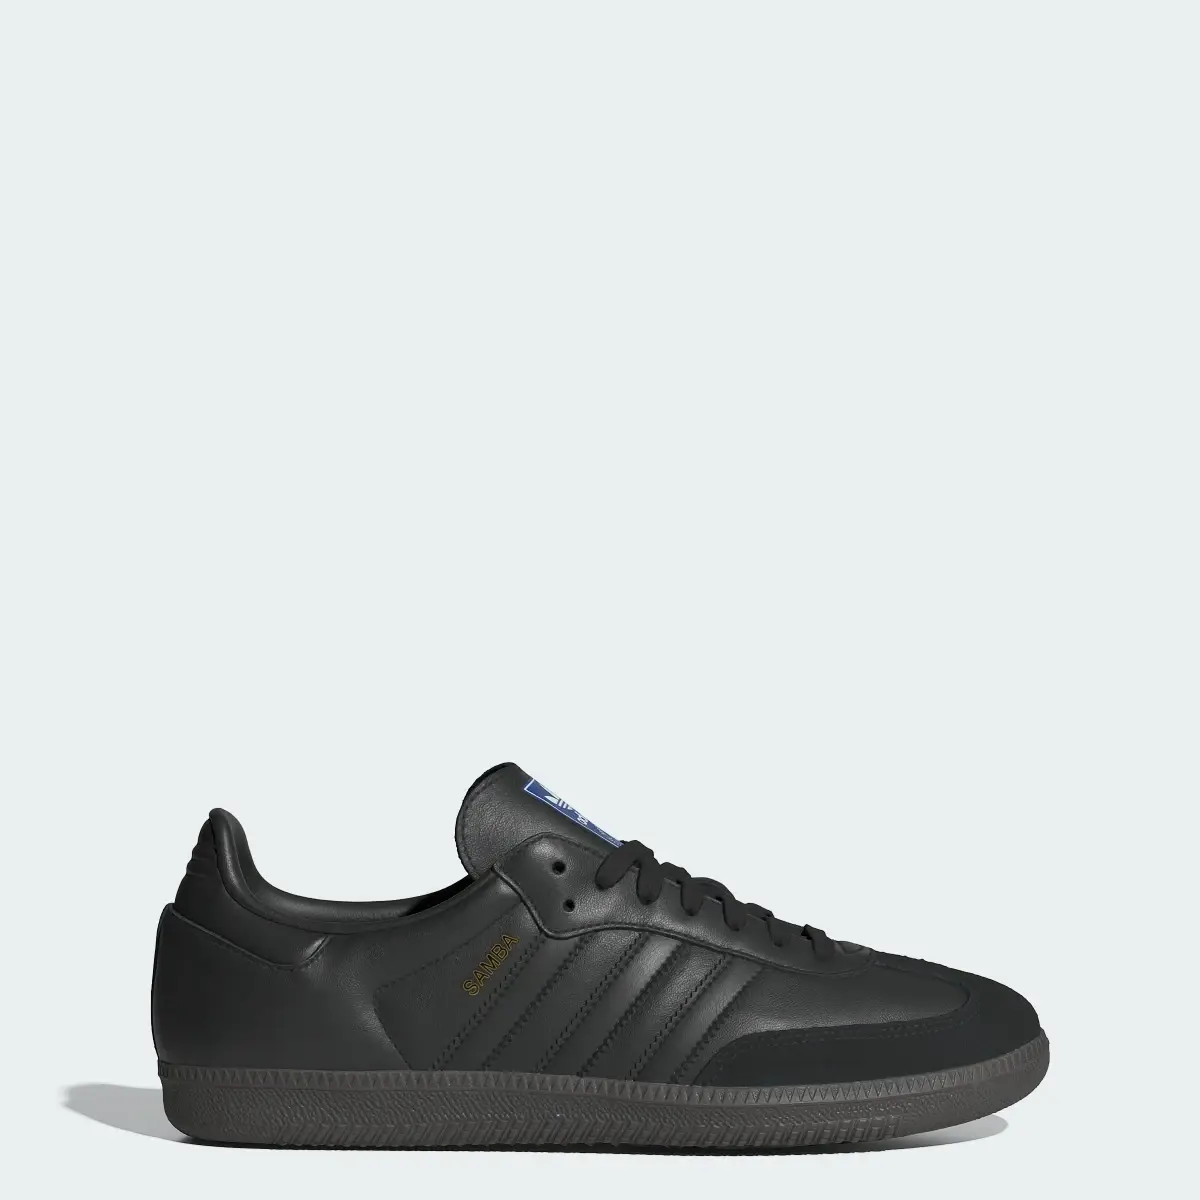 Adidas Samba OG Shoes. 1